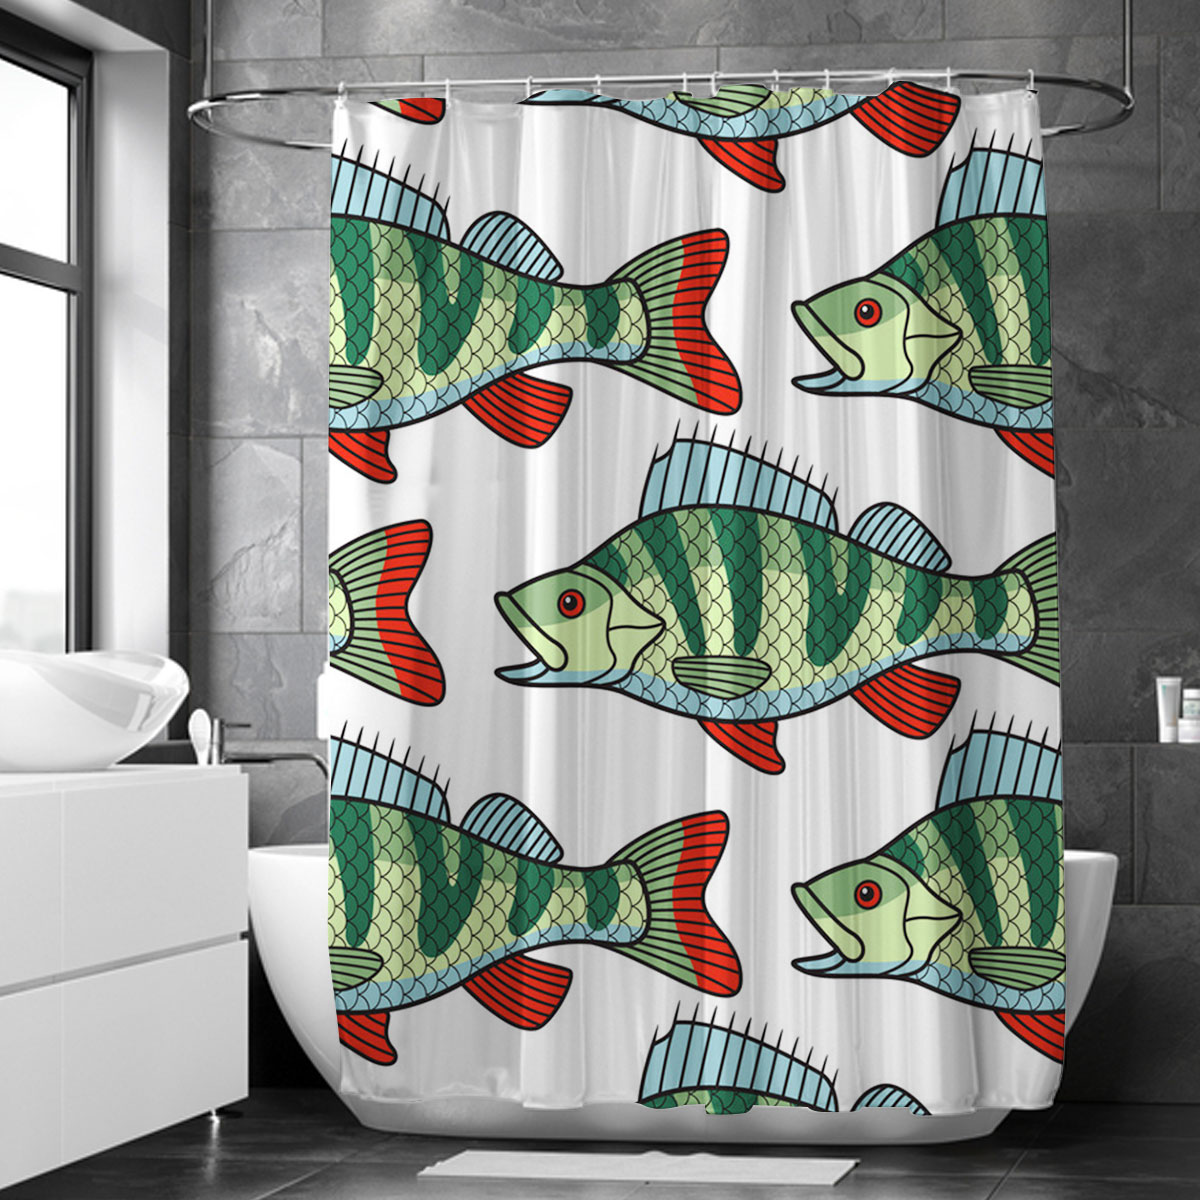 Green Bass Fish Shower Curtain